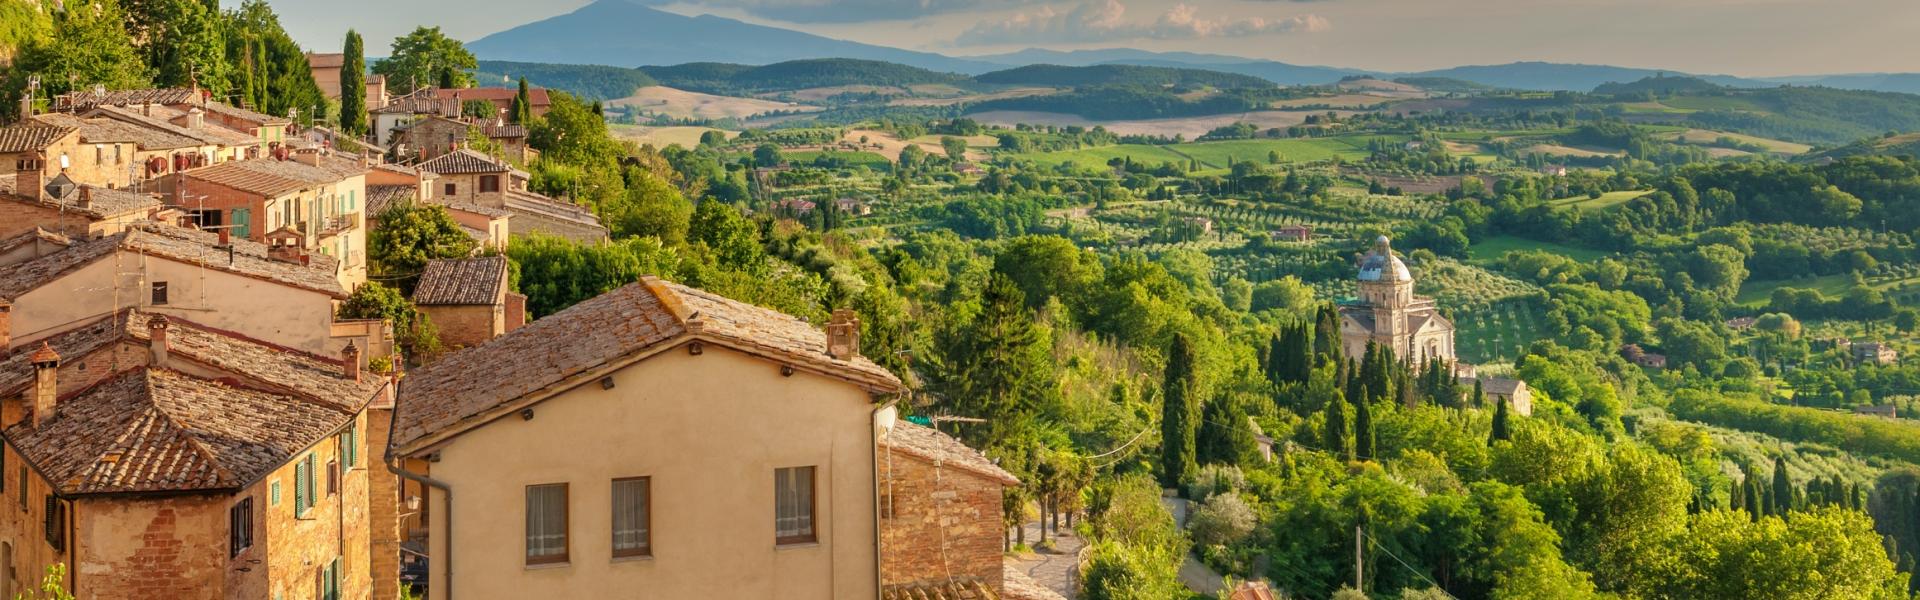 Ferienwohnungen & Ferienhäuser für Urlaub in der Provinz Lucca - Casamundo